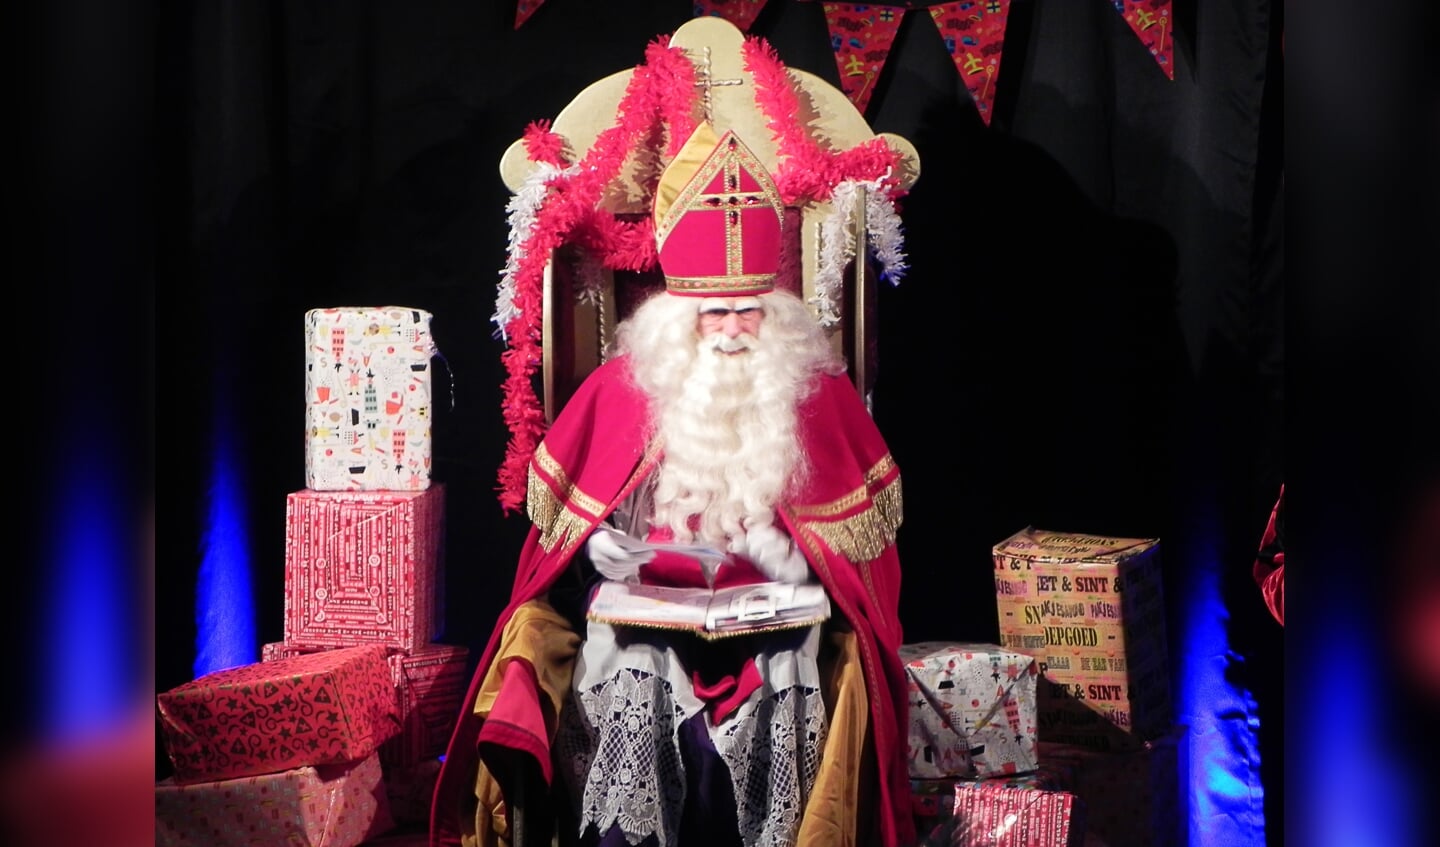 In het Kwartier las Sinterklaas de brieven voor die hij van de kinderen ontvangen had.